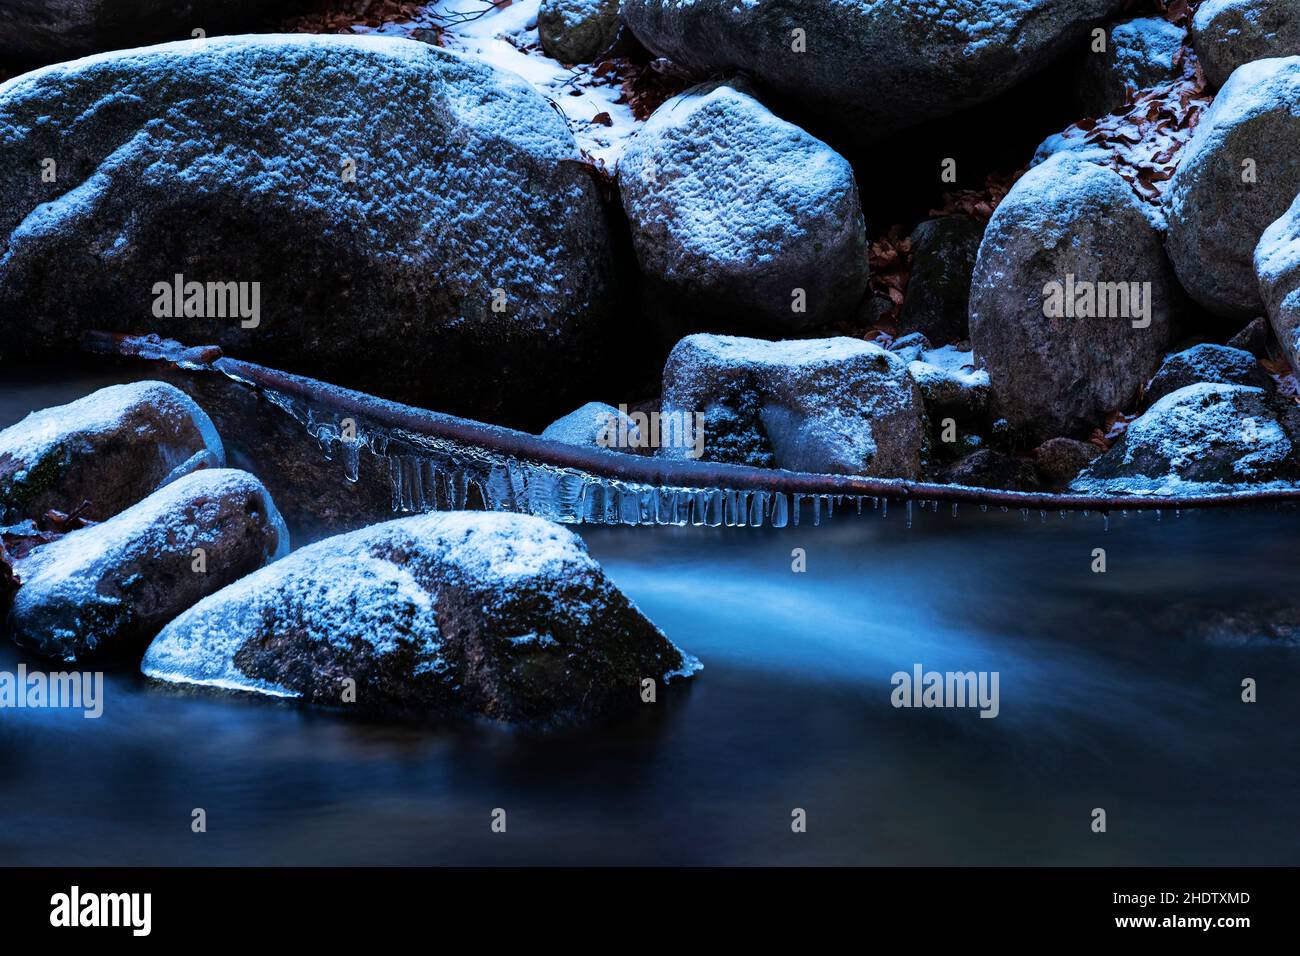 Heure bleue, ruisseau de montagne dans les Carpates en Pologne.Une énorme masse de pierres couvertes de neige et de glace.Branche à base de pierre avec cristaux de glace Banque D'Images